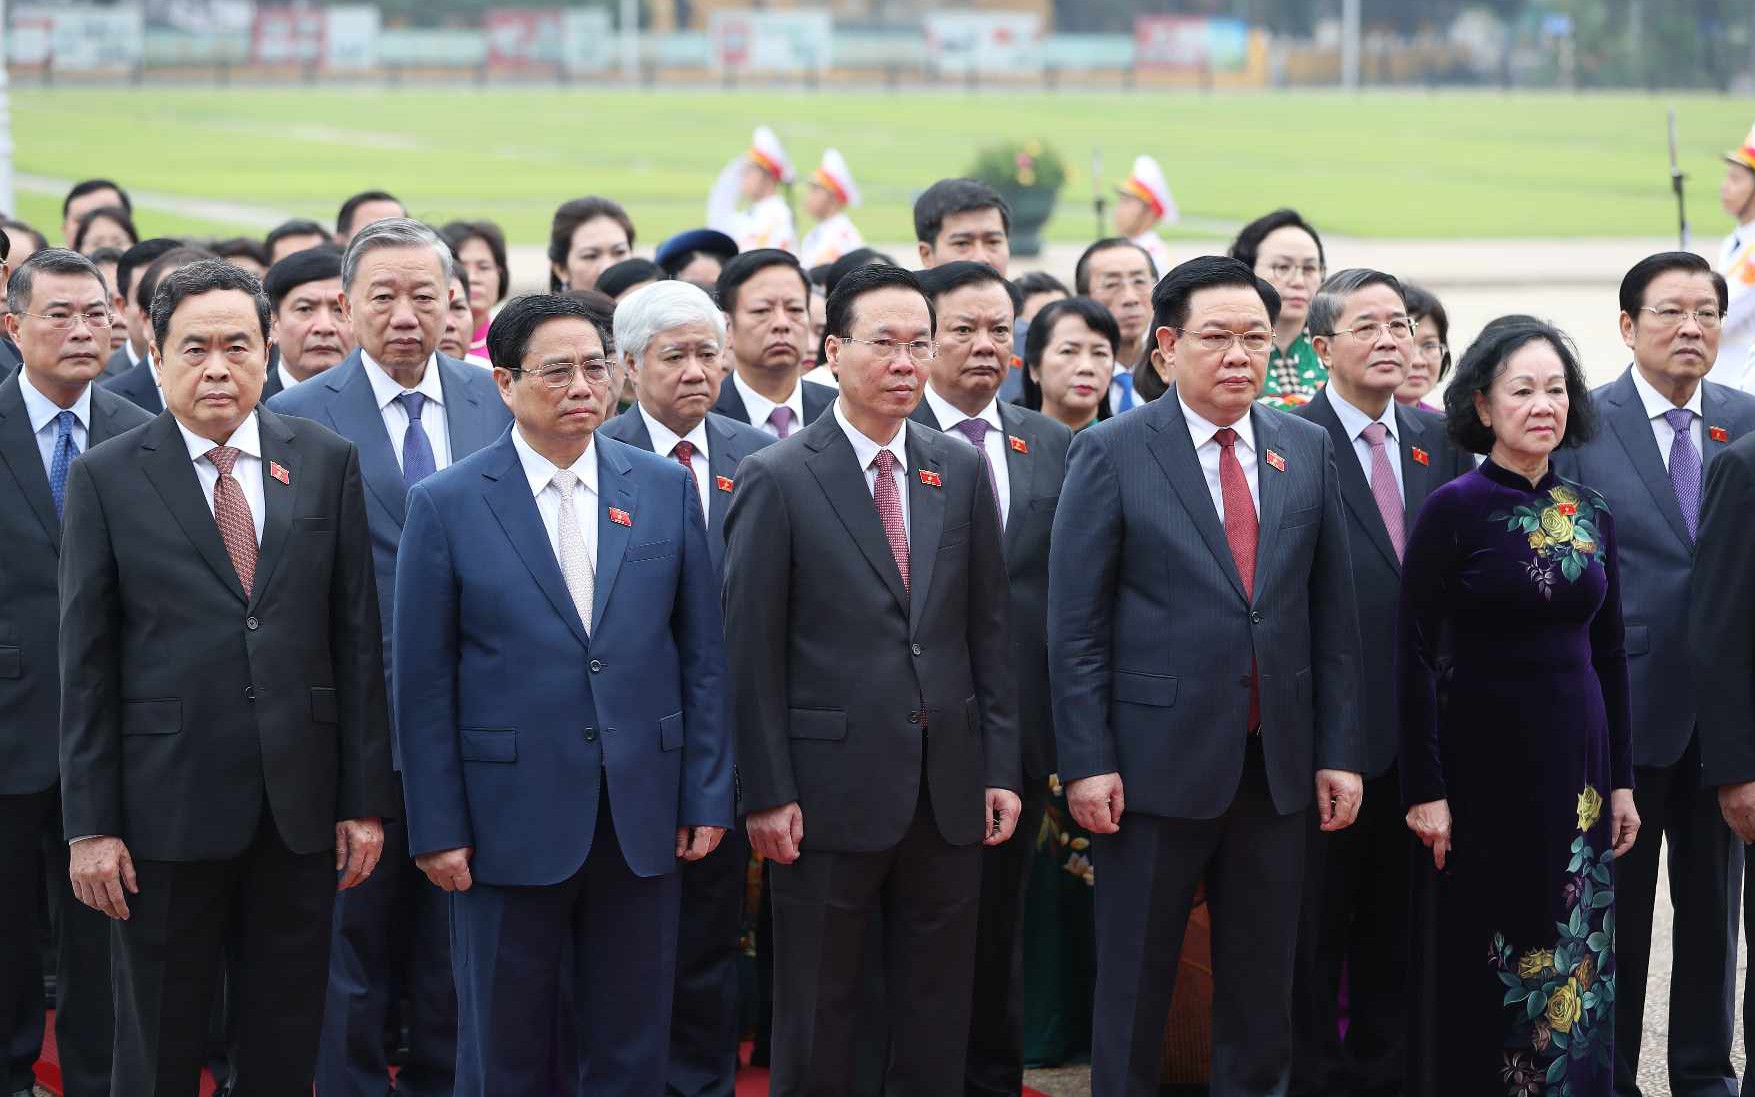 Lãnh đạo Đảng, Nhà nước viếng Chủ tịch Hồ Chí Minh trước giờ khai mạc Kỳ 6 Quốc hội khóa XV